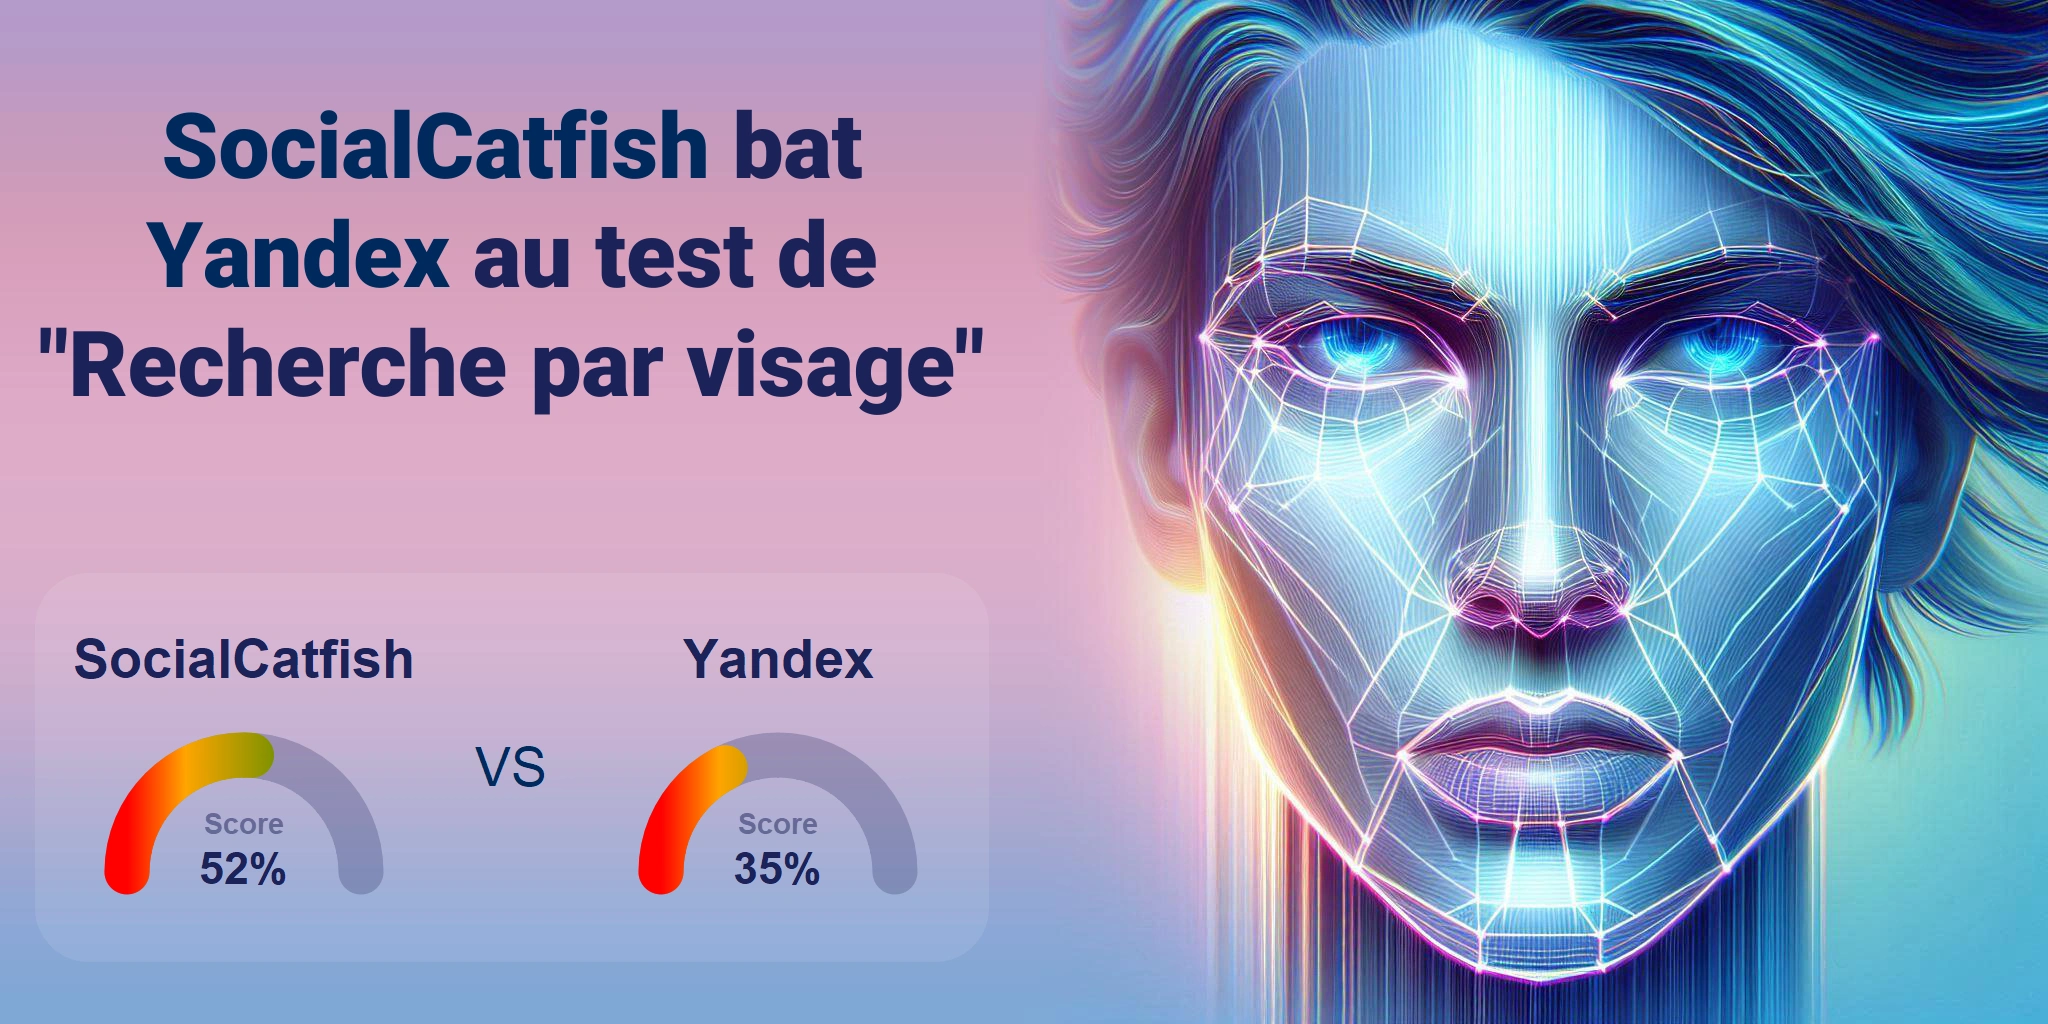 Quel est le meilleur pour la recherche faciale : <br>SocialCatfish ou Yandex ?